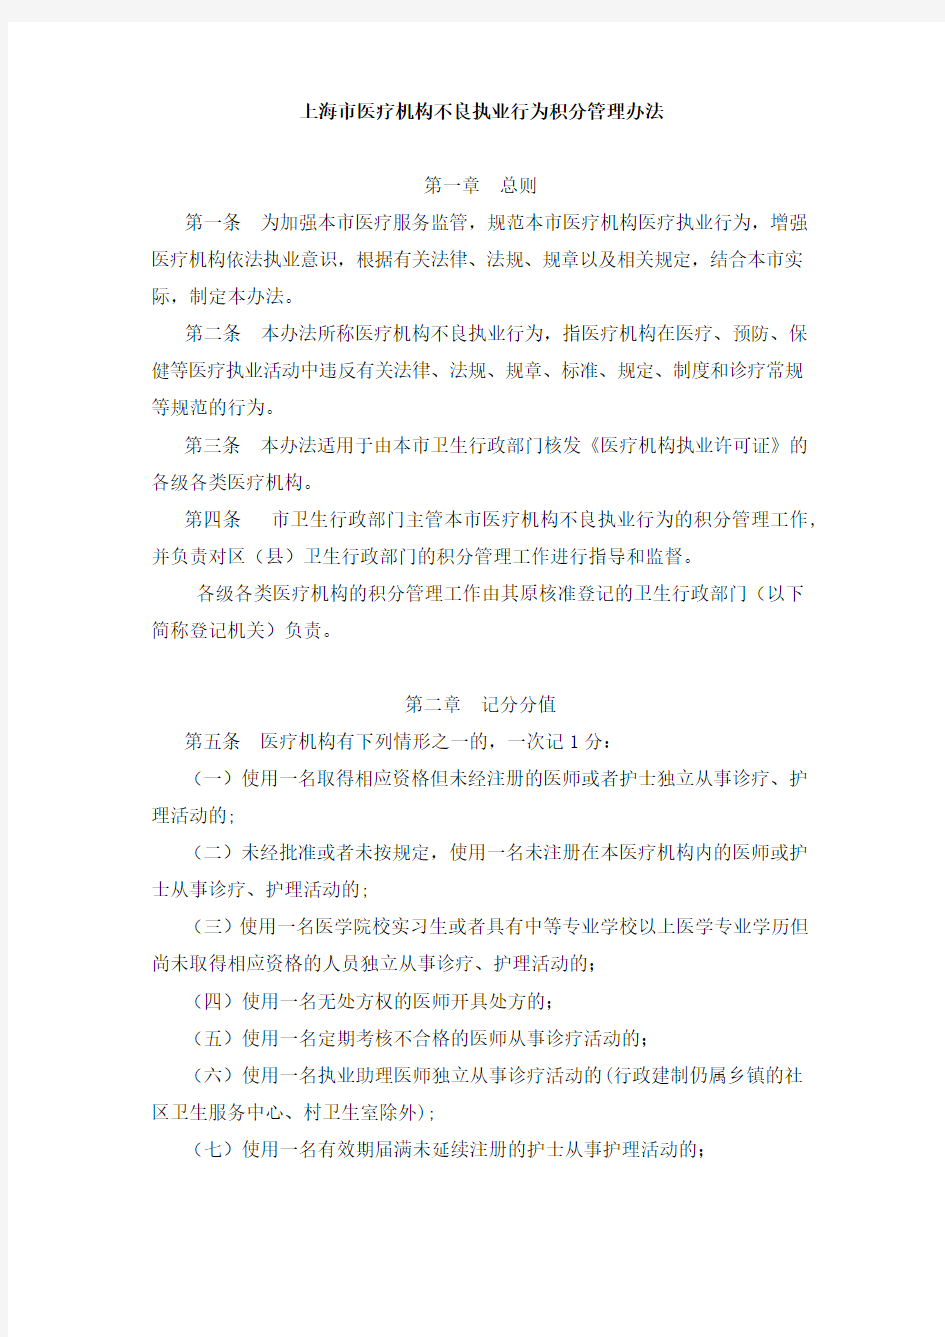 上海市医疗机构不良执业行为积分管理办法